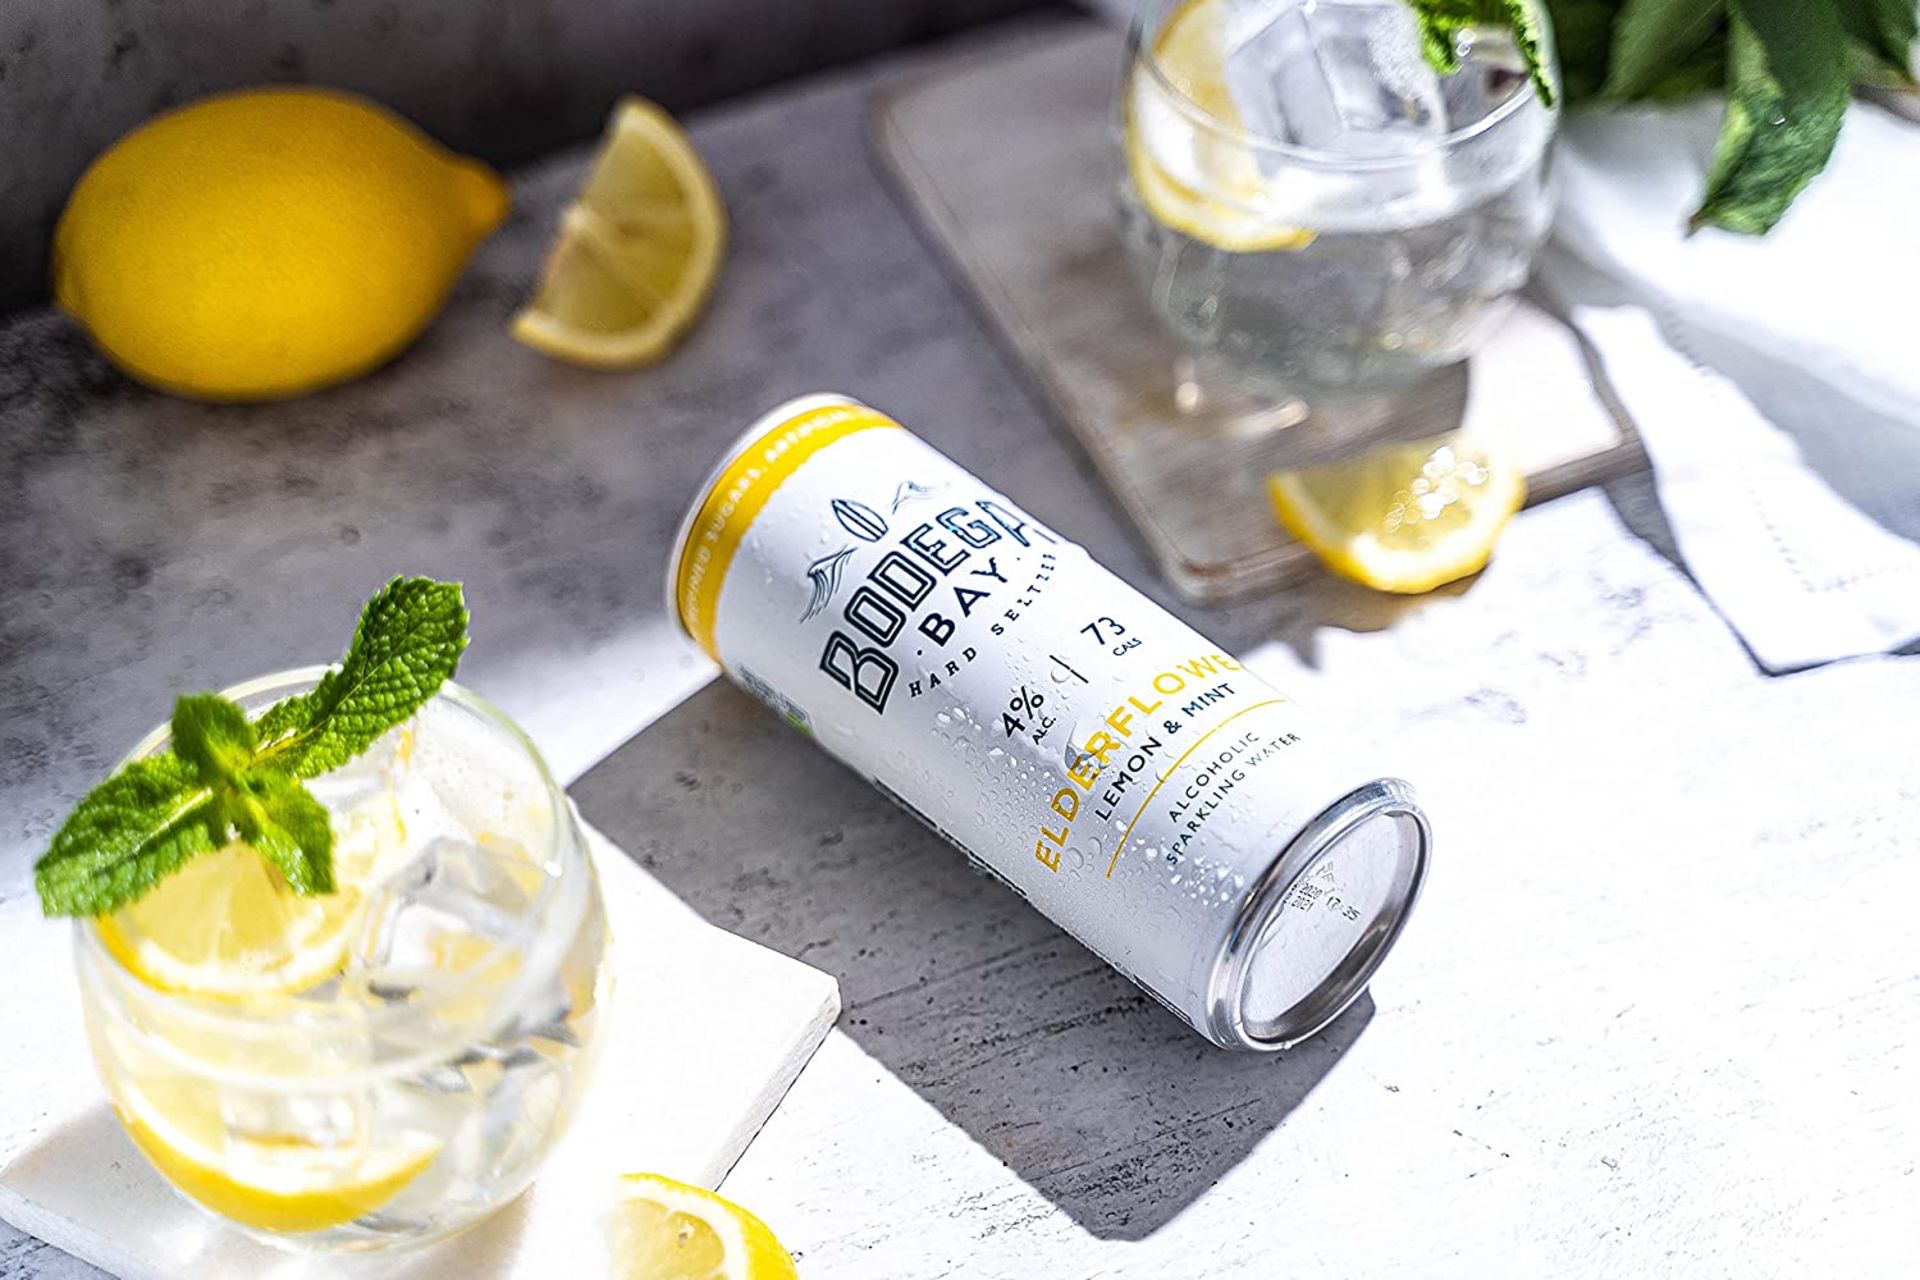 24 x Bodega Bay Hard Seltzer 250ml Alcoholic Sparkling Water Drinks - Elderflower Lemon & Mint - - Image 6 of 7